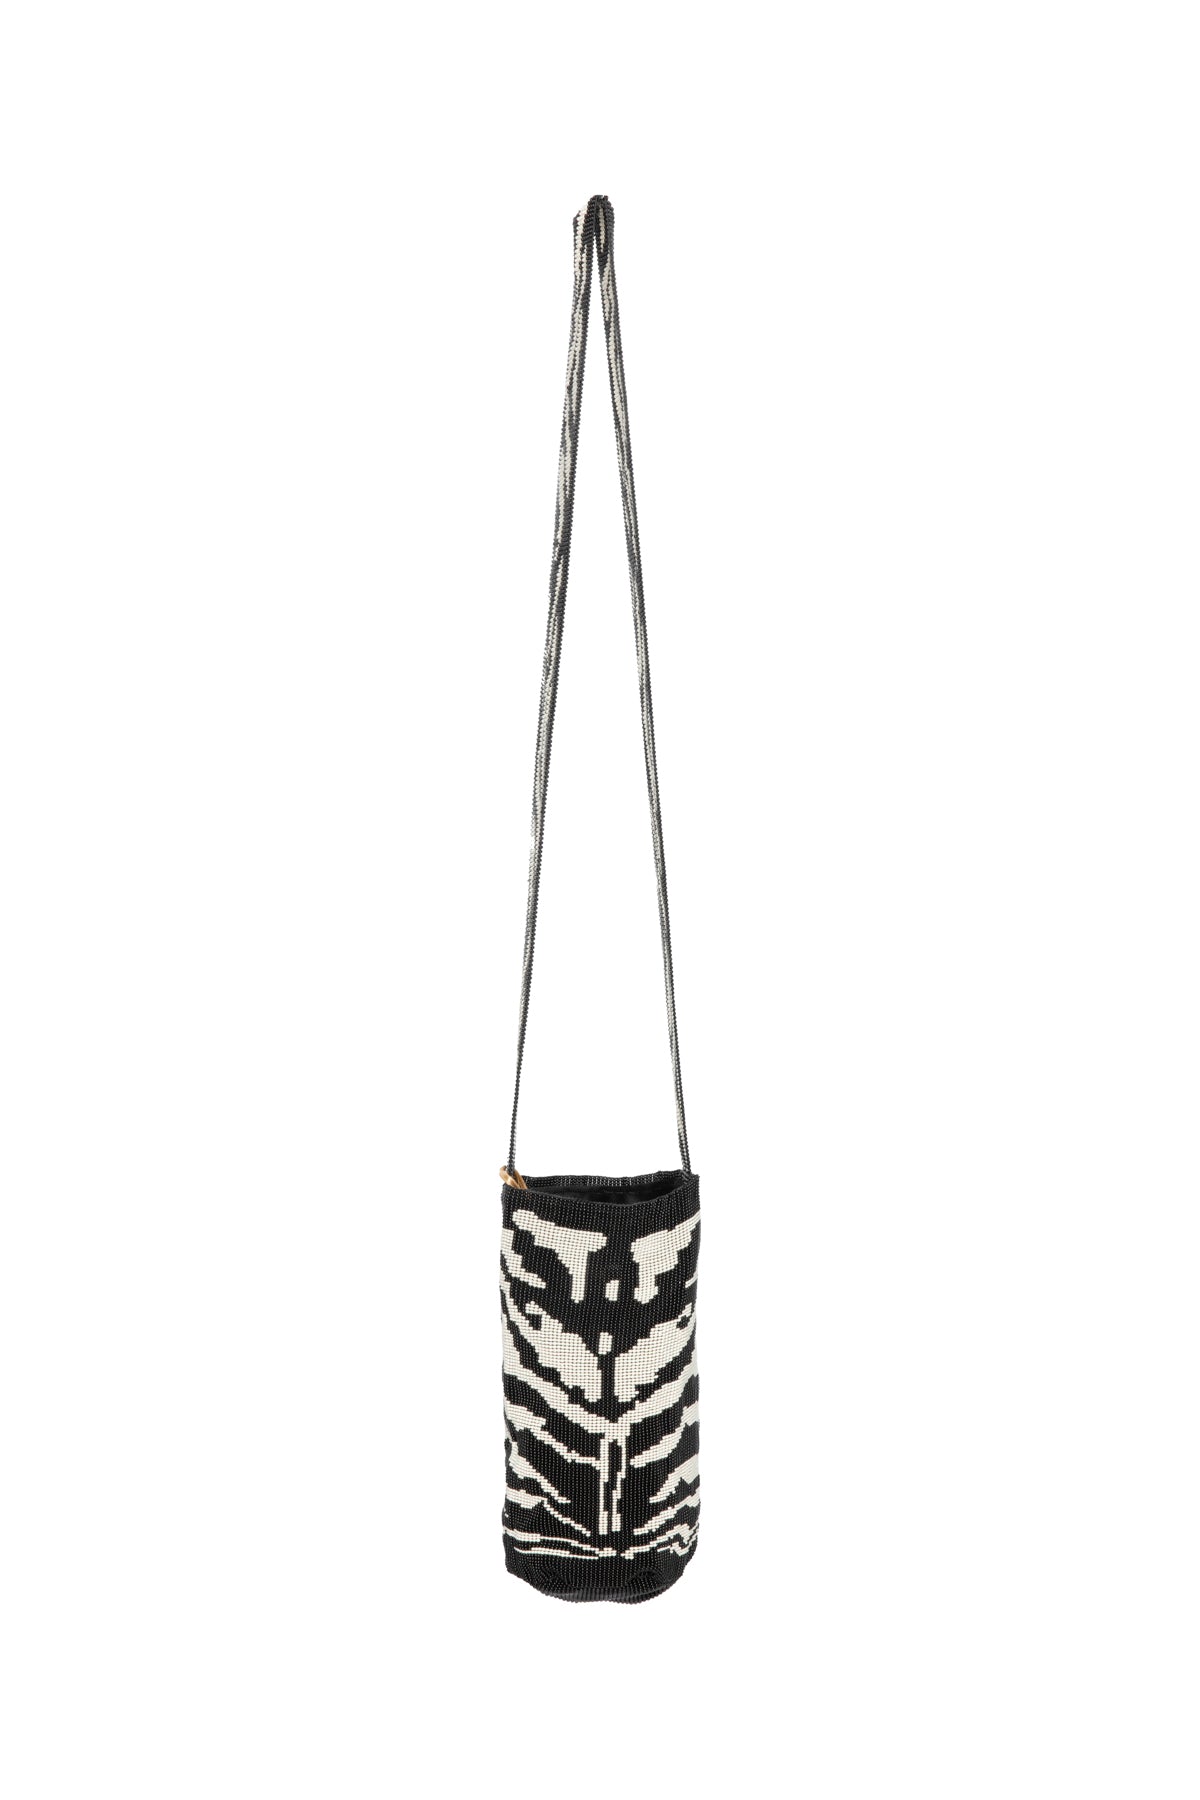 Beaded Bag - Black & White Zebra